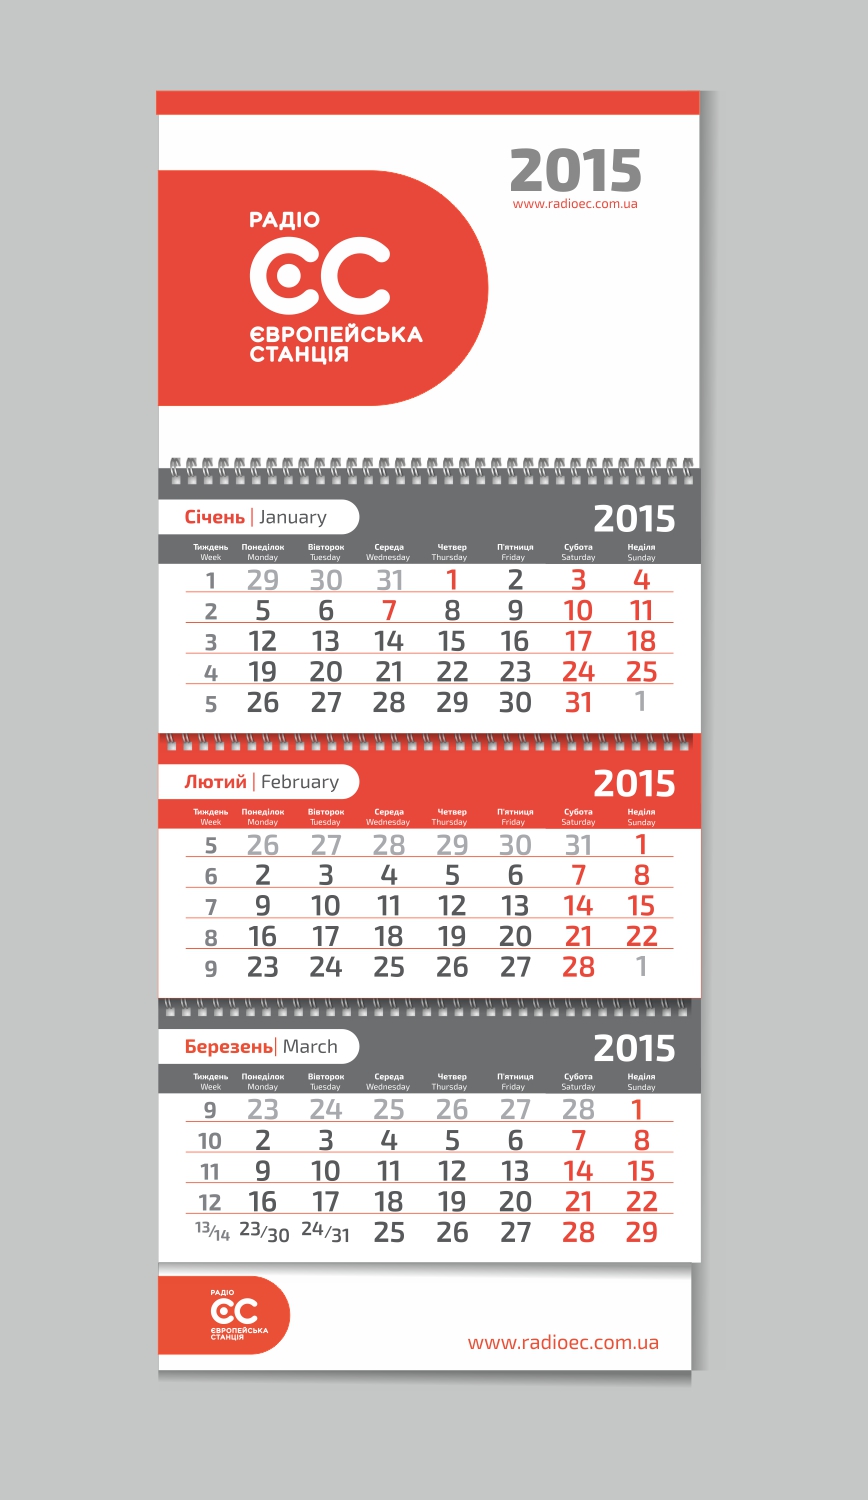 Квартальный календарь с индивидуальной календарной сеткой для радио ЕС